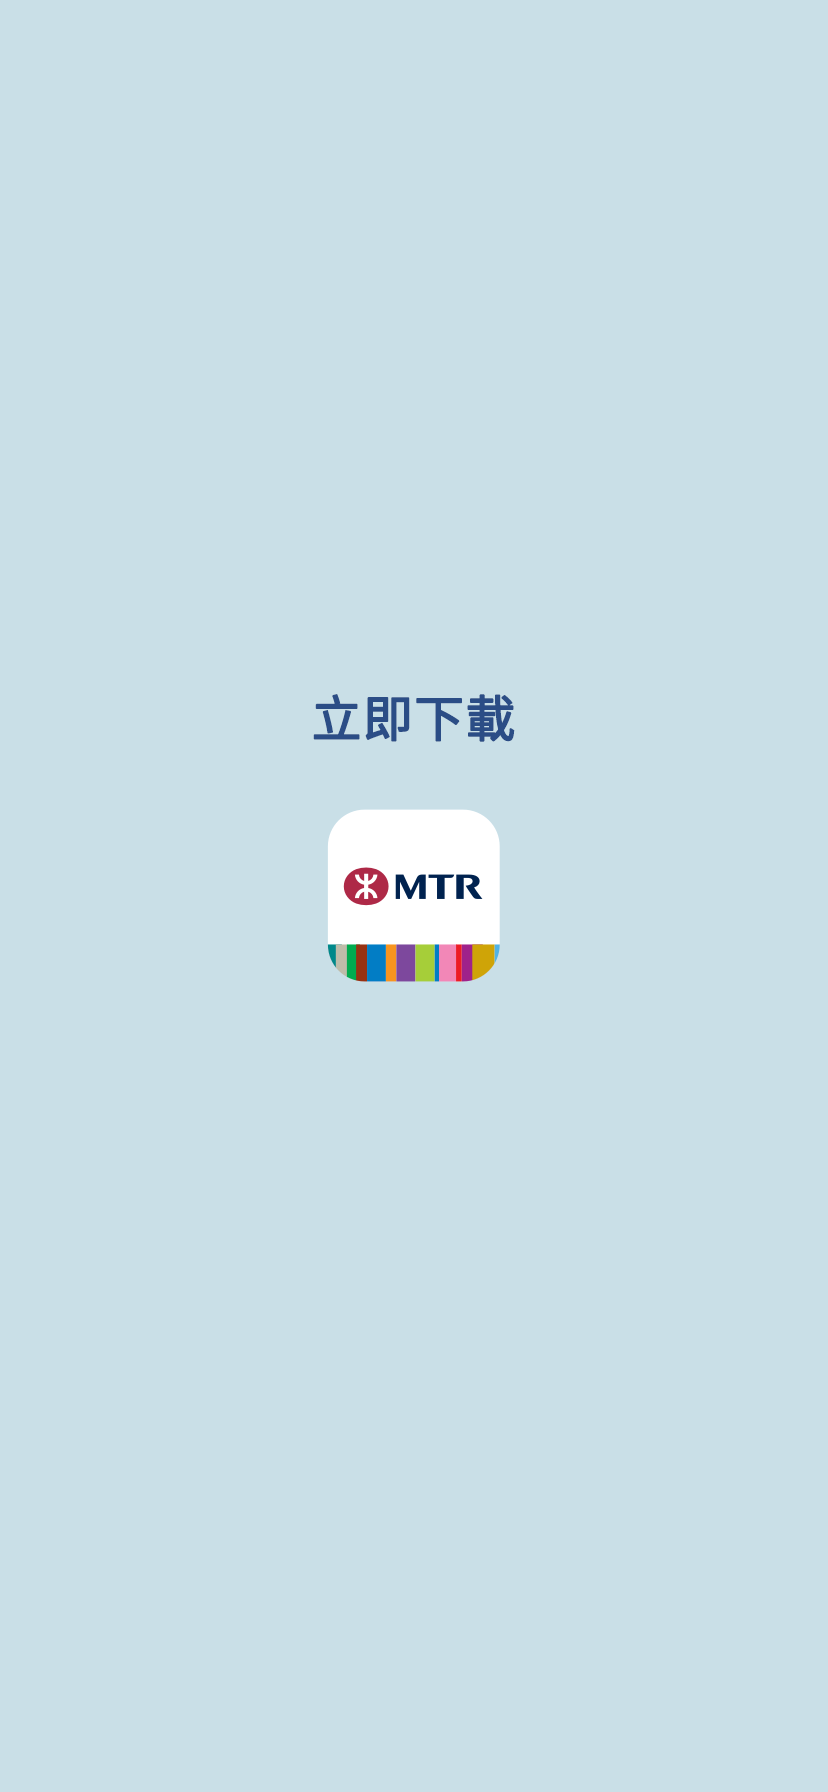 日常消費 坐享MTR分